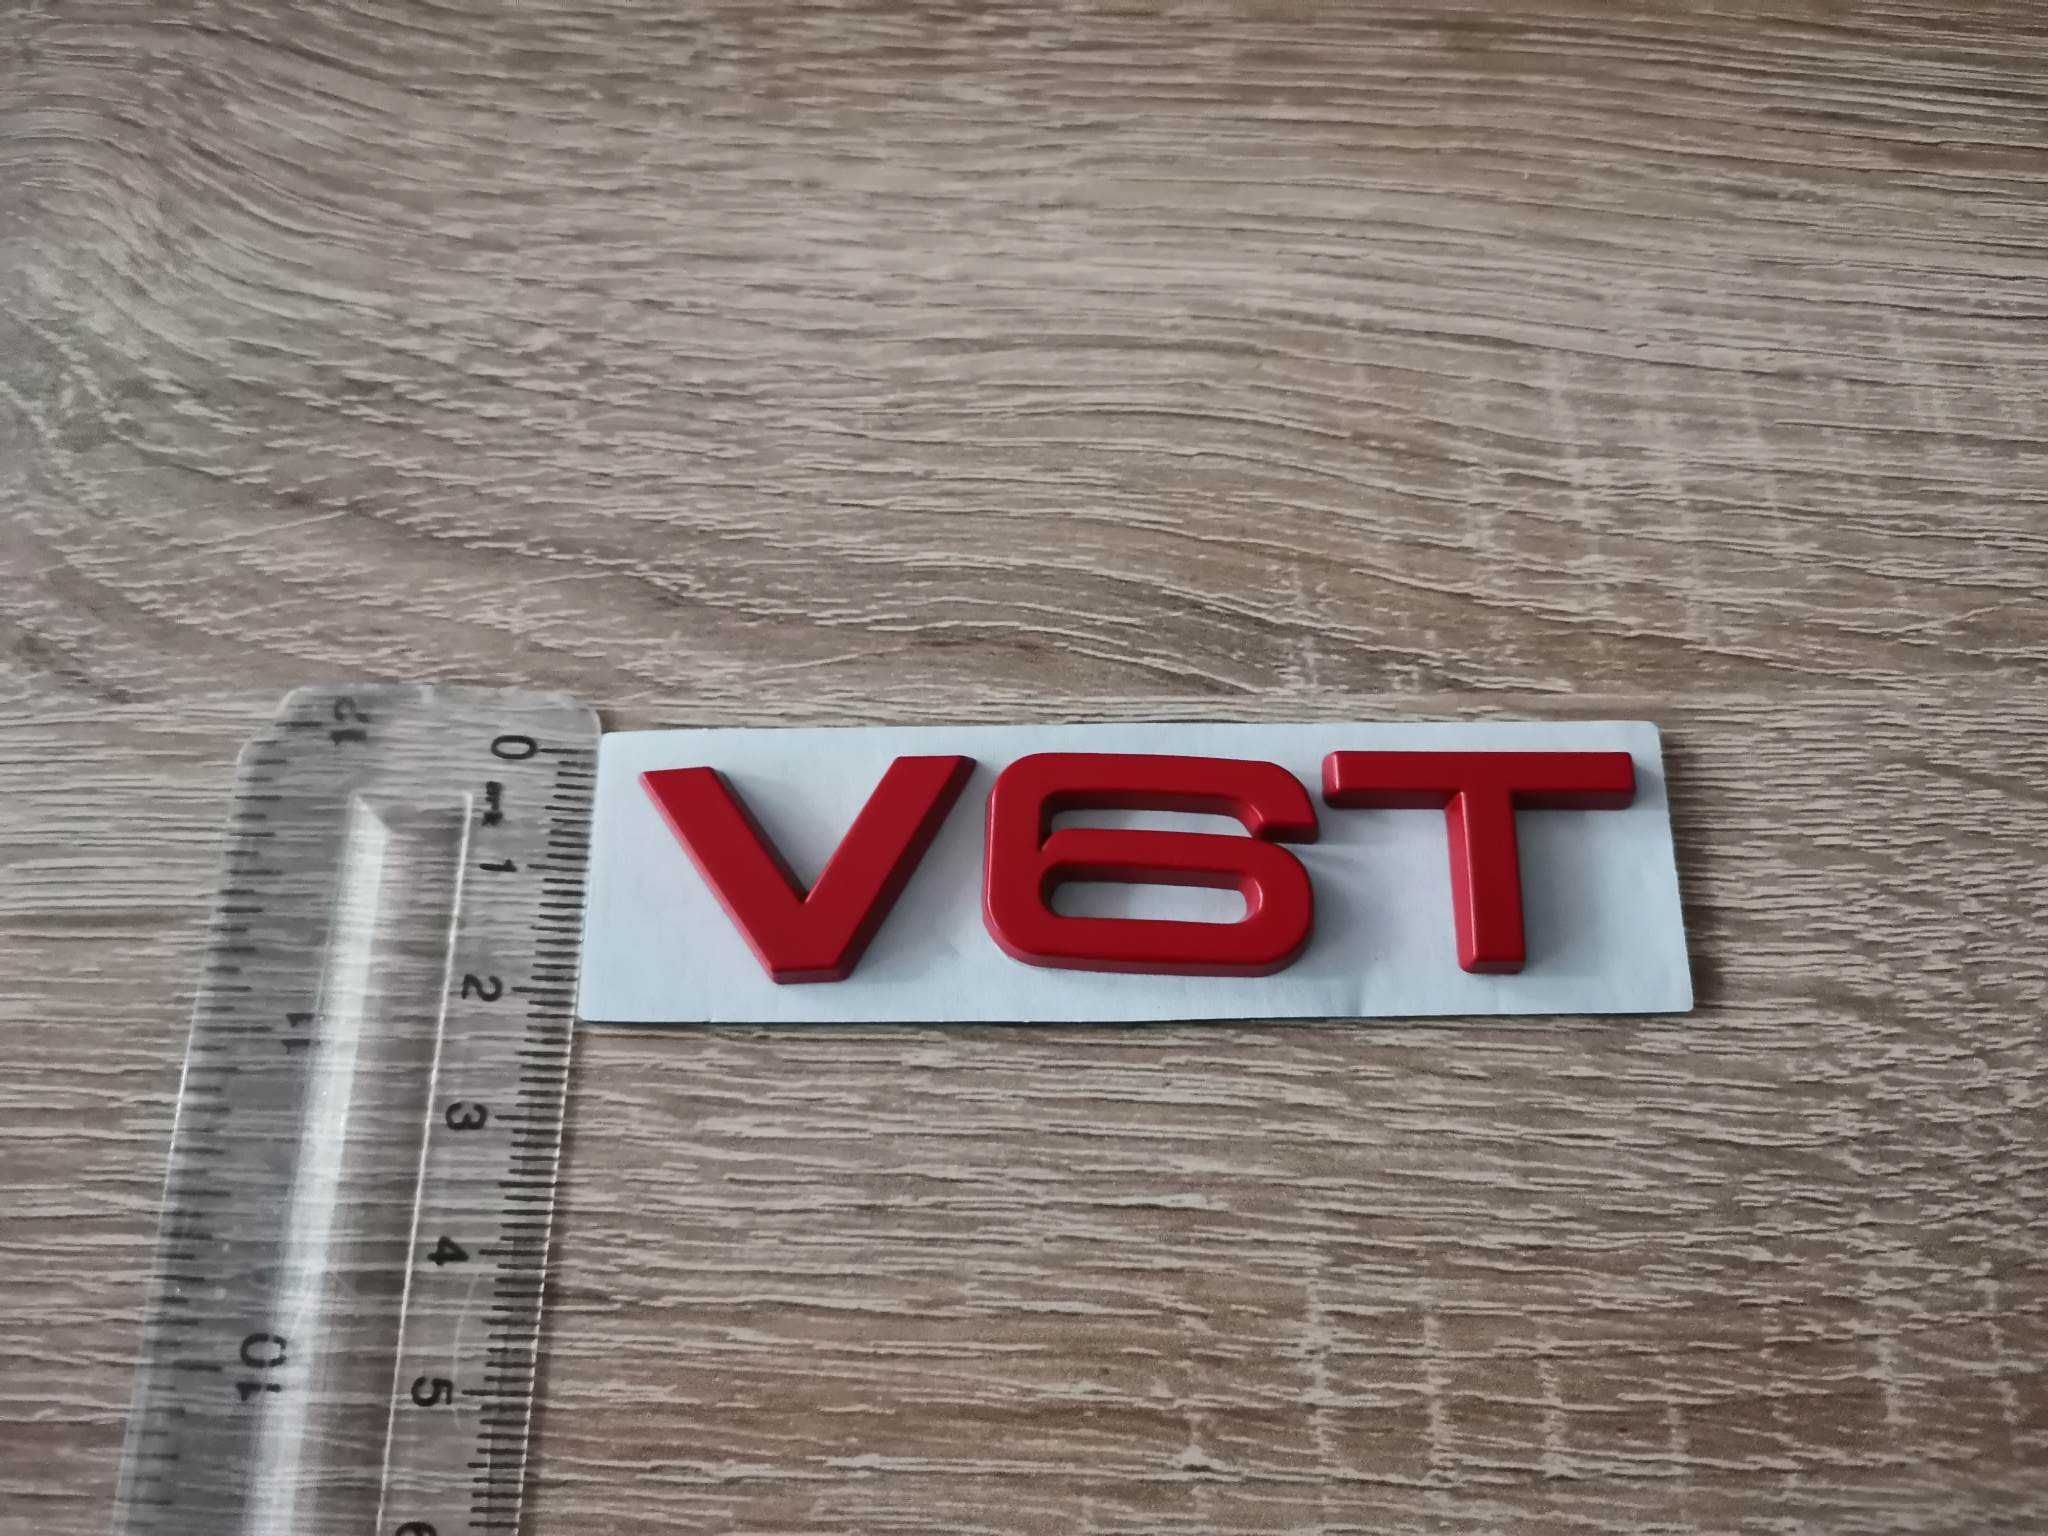 Ауди Audi V6T емблеми надписи